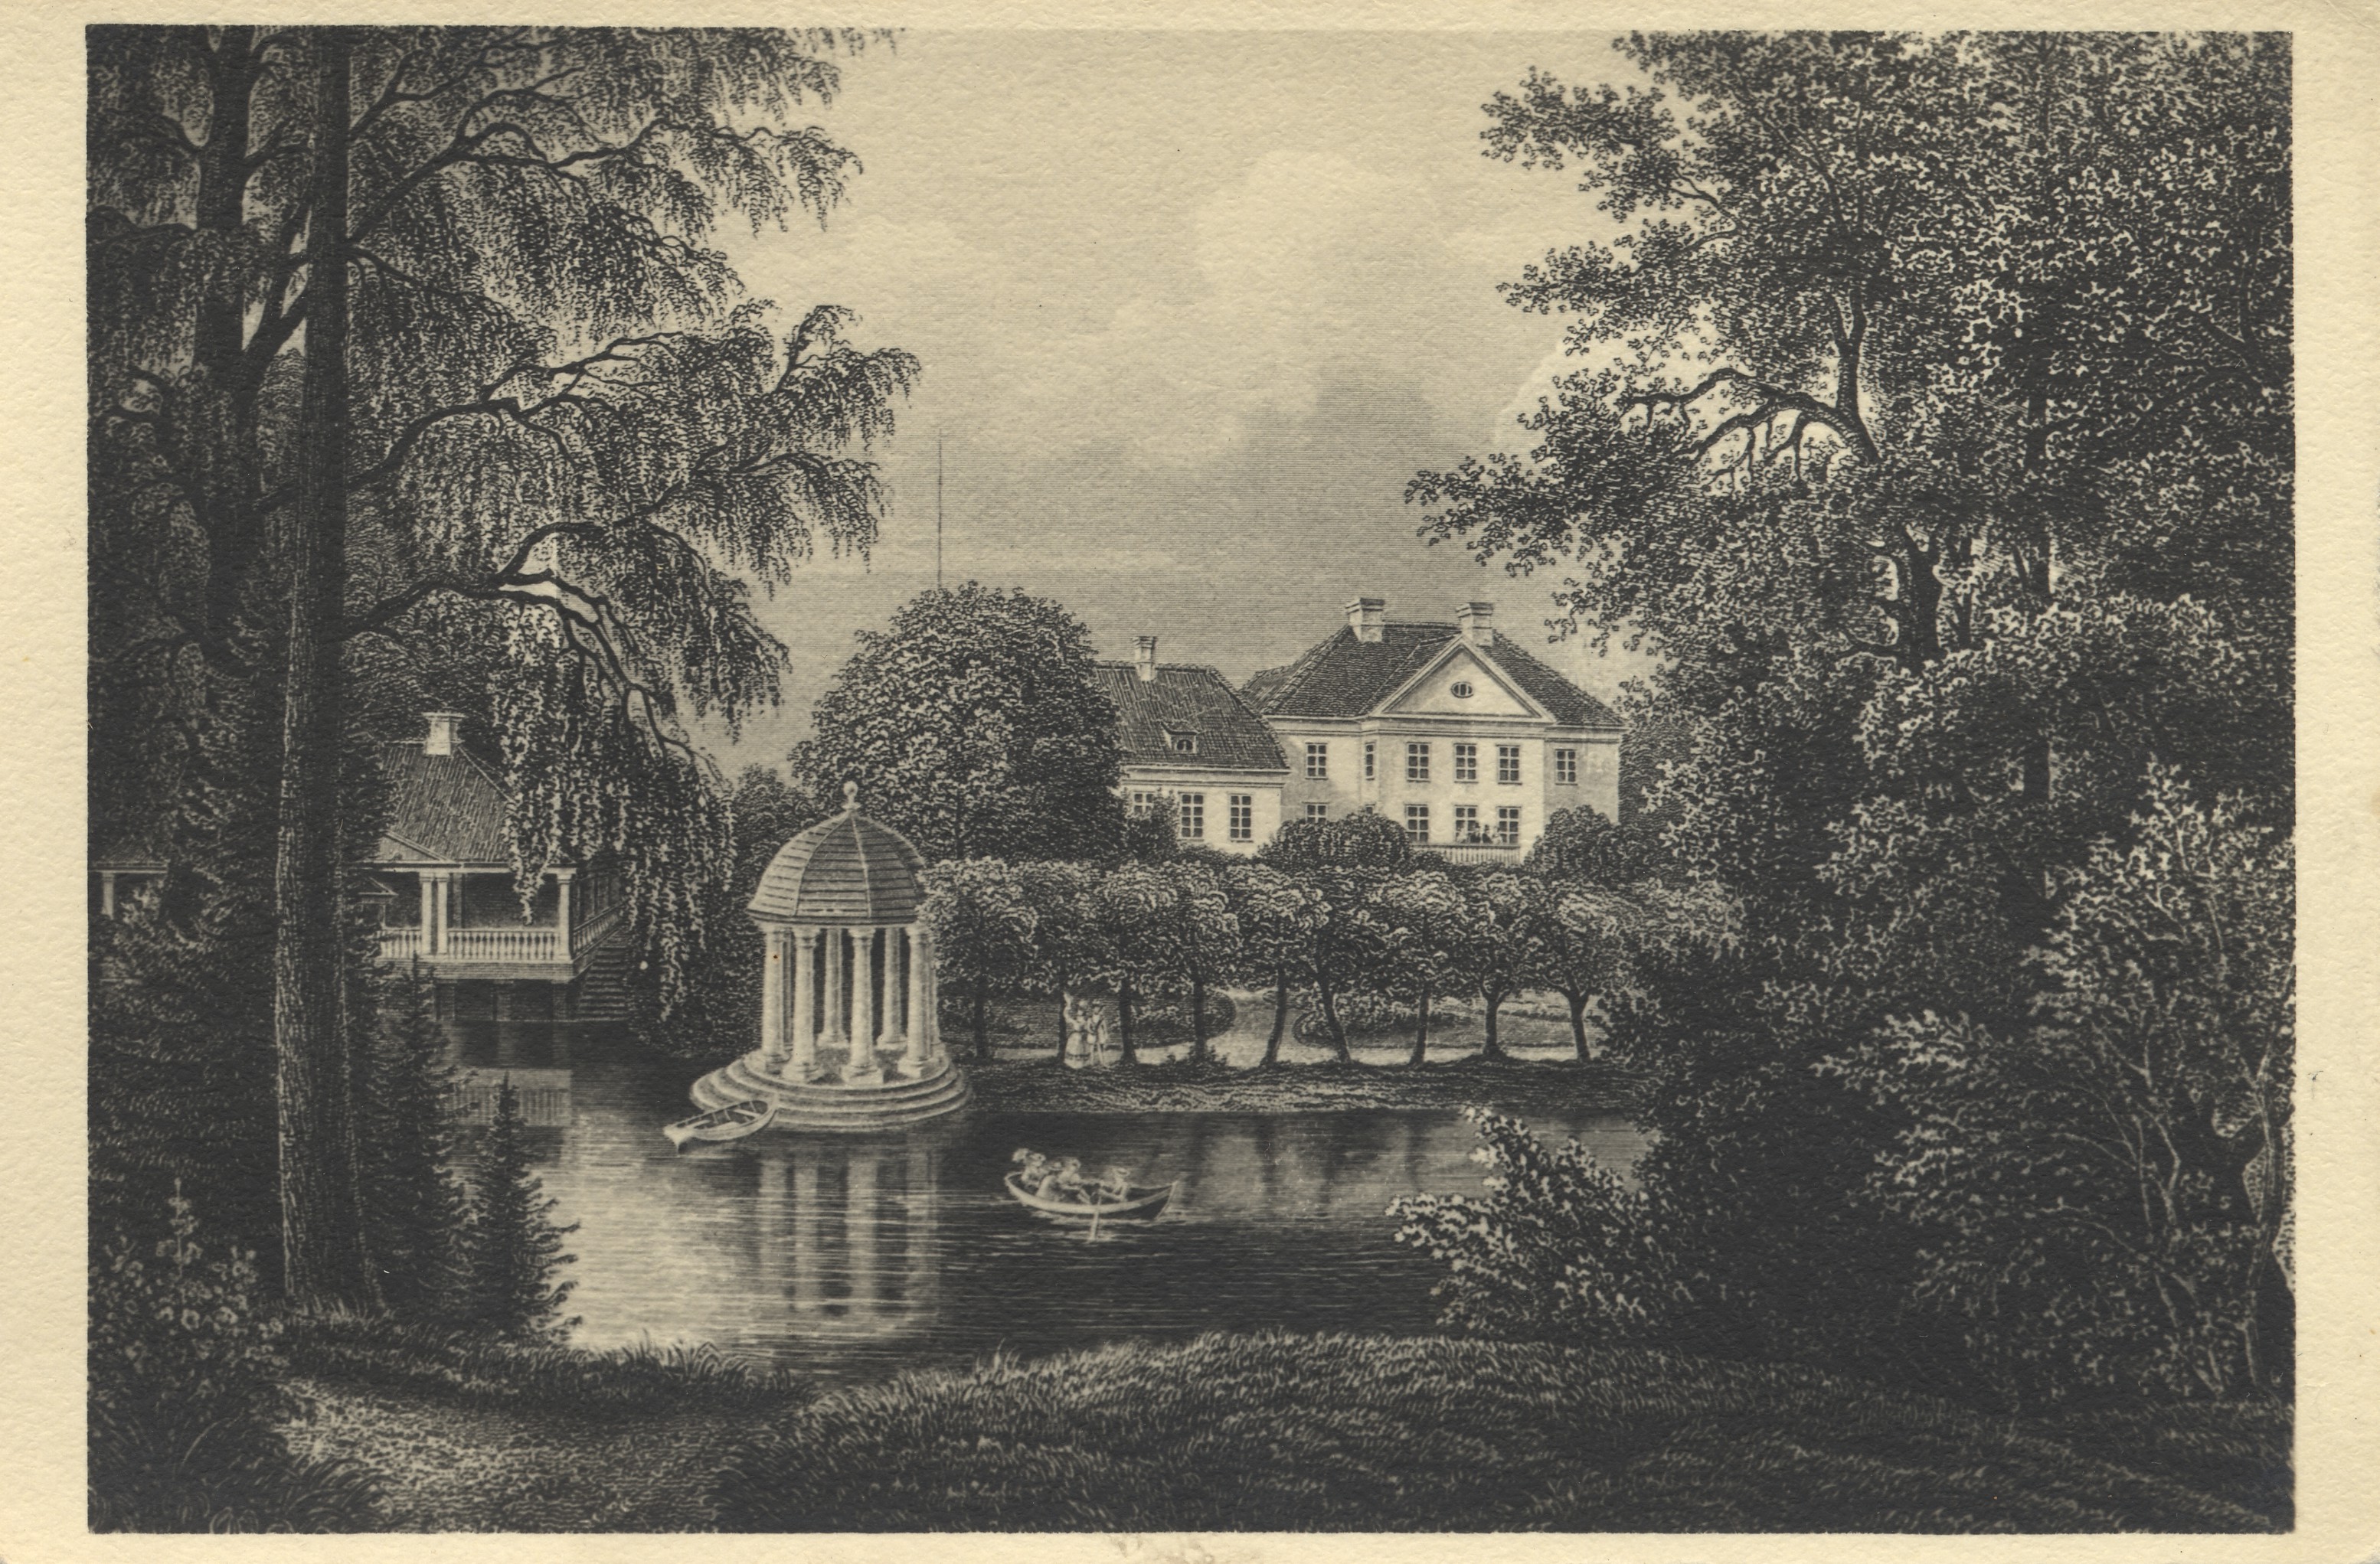 Palmse Manor in 1850 by Stavenhagen